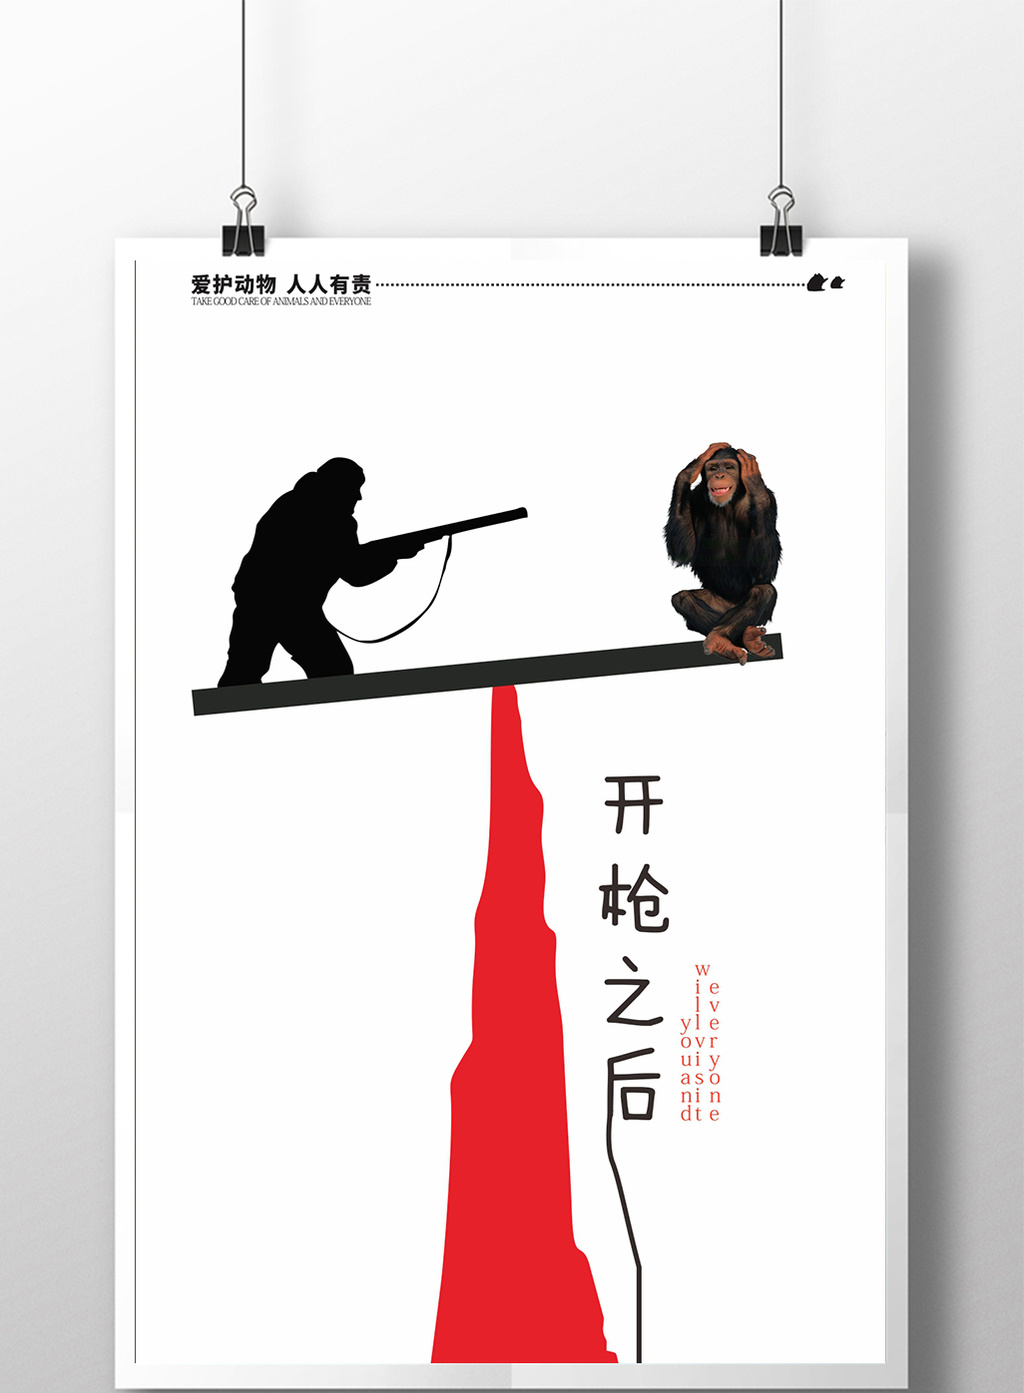 包图 广告设计 海报 【cdr】 简约创意保护野生动物公益  上传时间